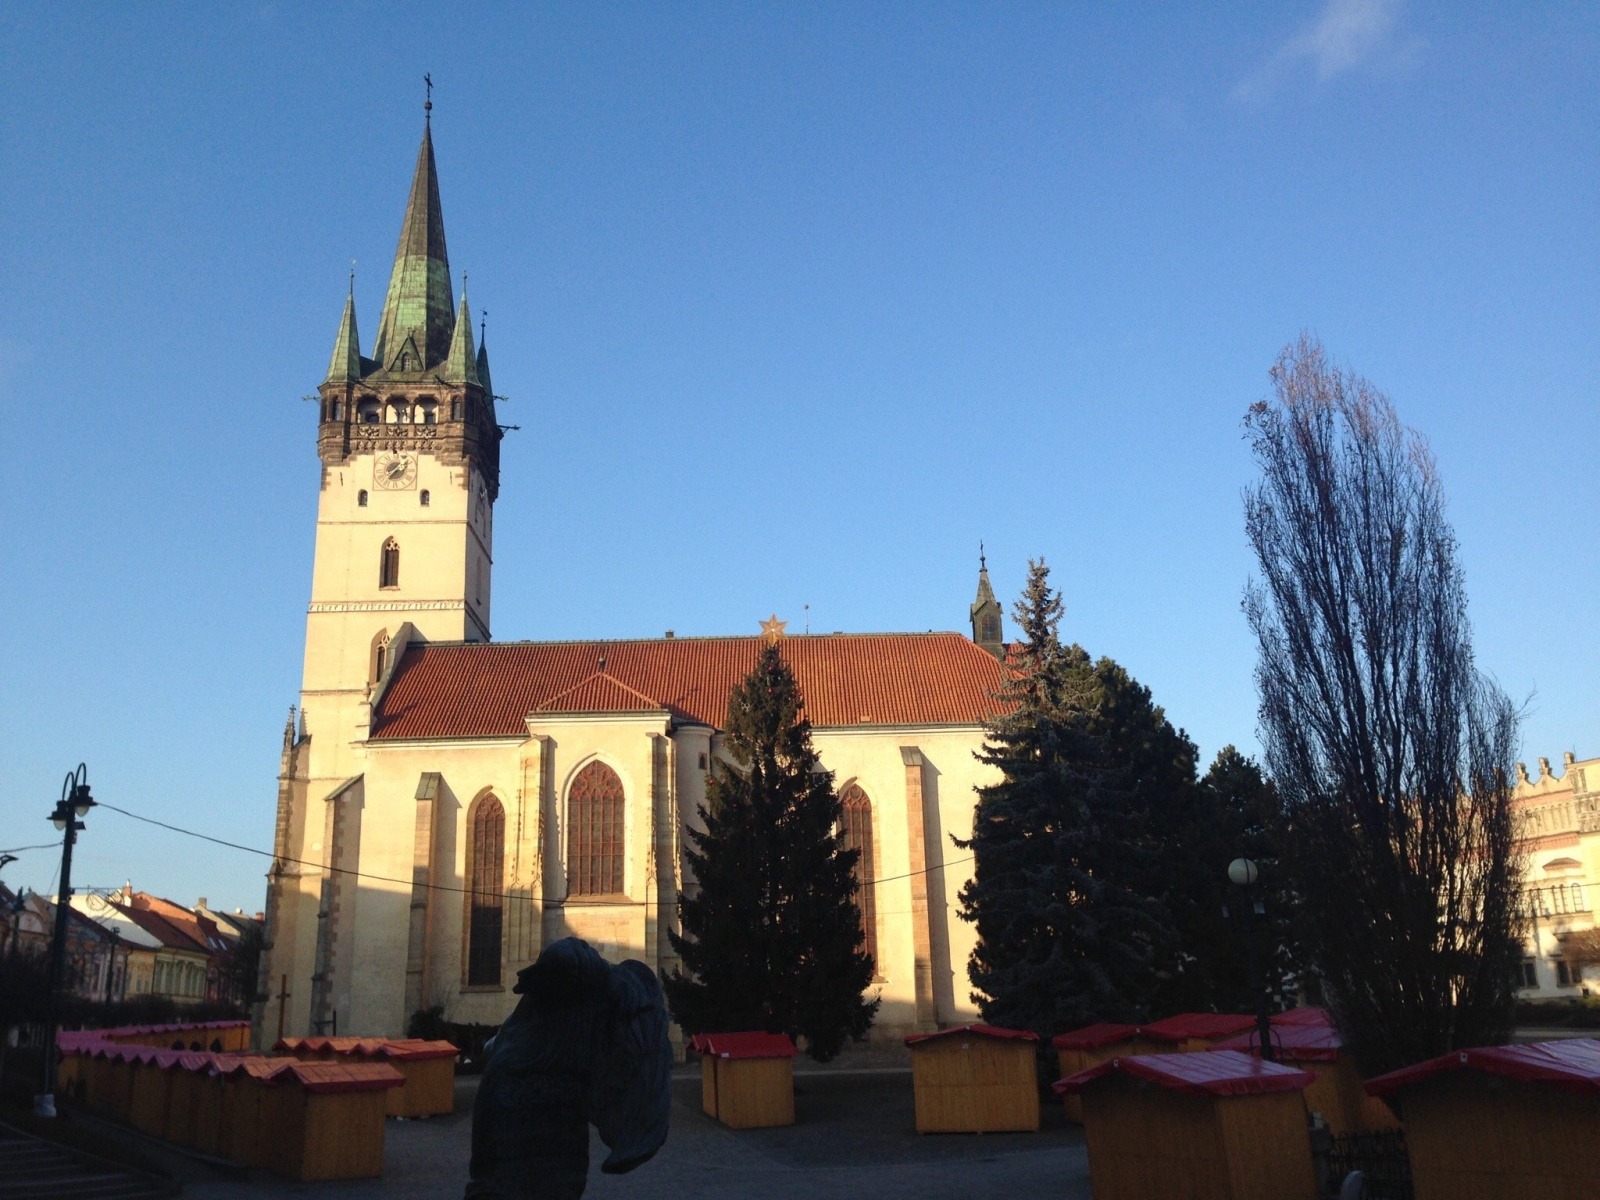 Прешов – это красивый словацкий город, площади и улицы которого украшены в стилях разных эпох